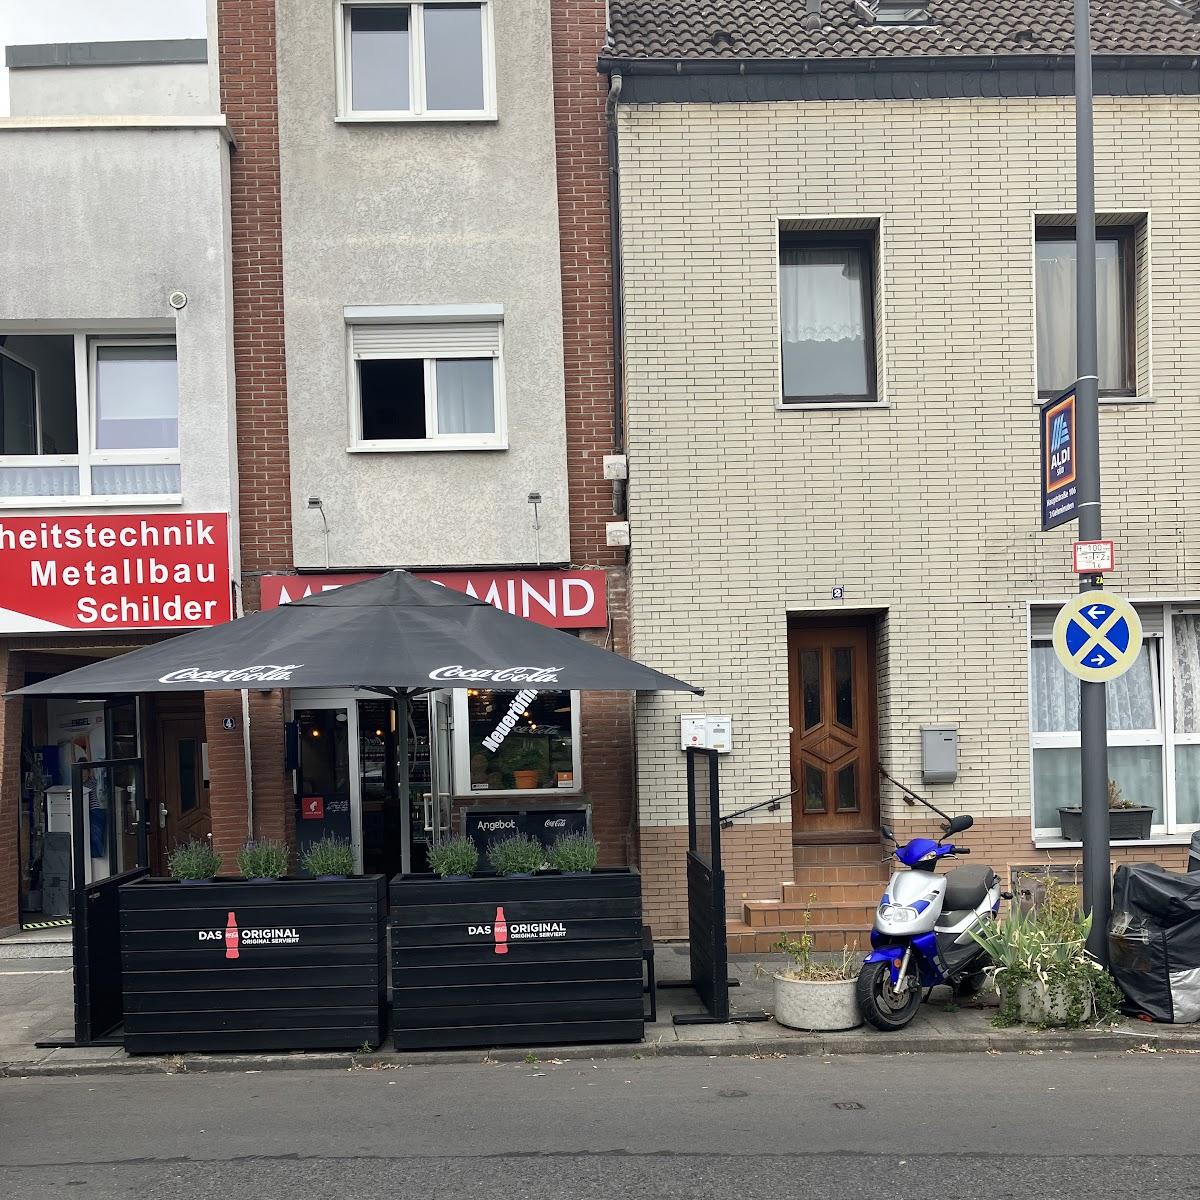 Restaurant "Meat & Mind" in Köln